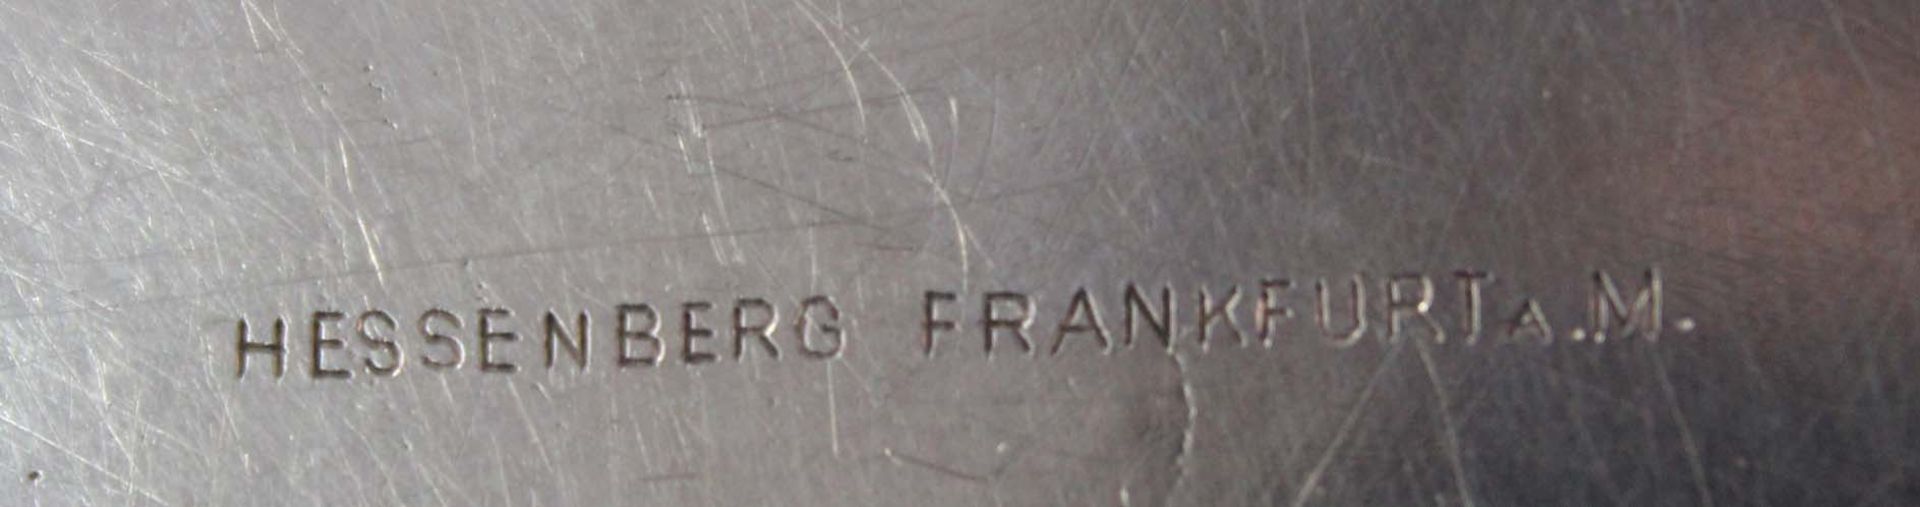 2 kleine Teller, Silber 800, Wilkens / Hessenberg Frankfurt am Main.237 Gramm. 15 cm im Durchmesser. - Image 9 of 10